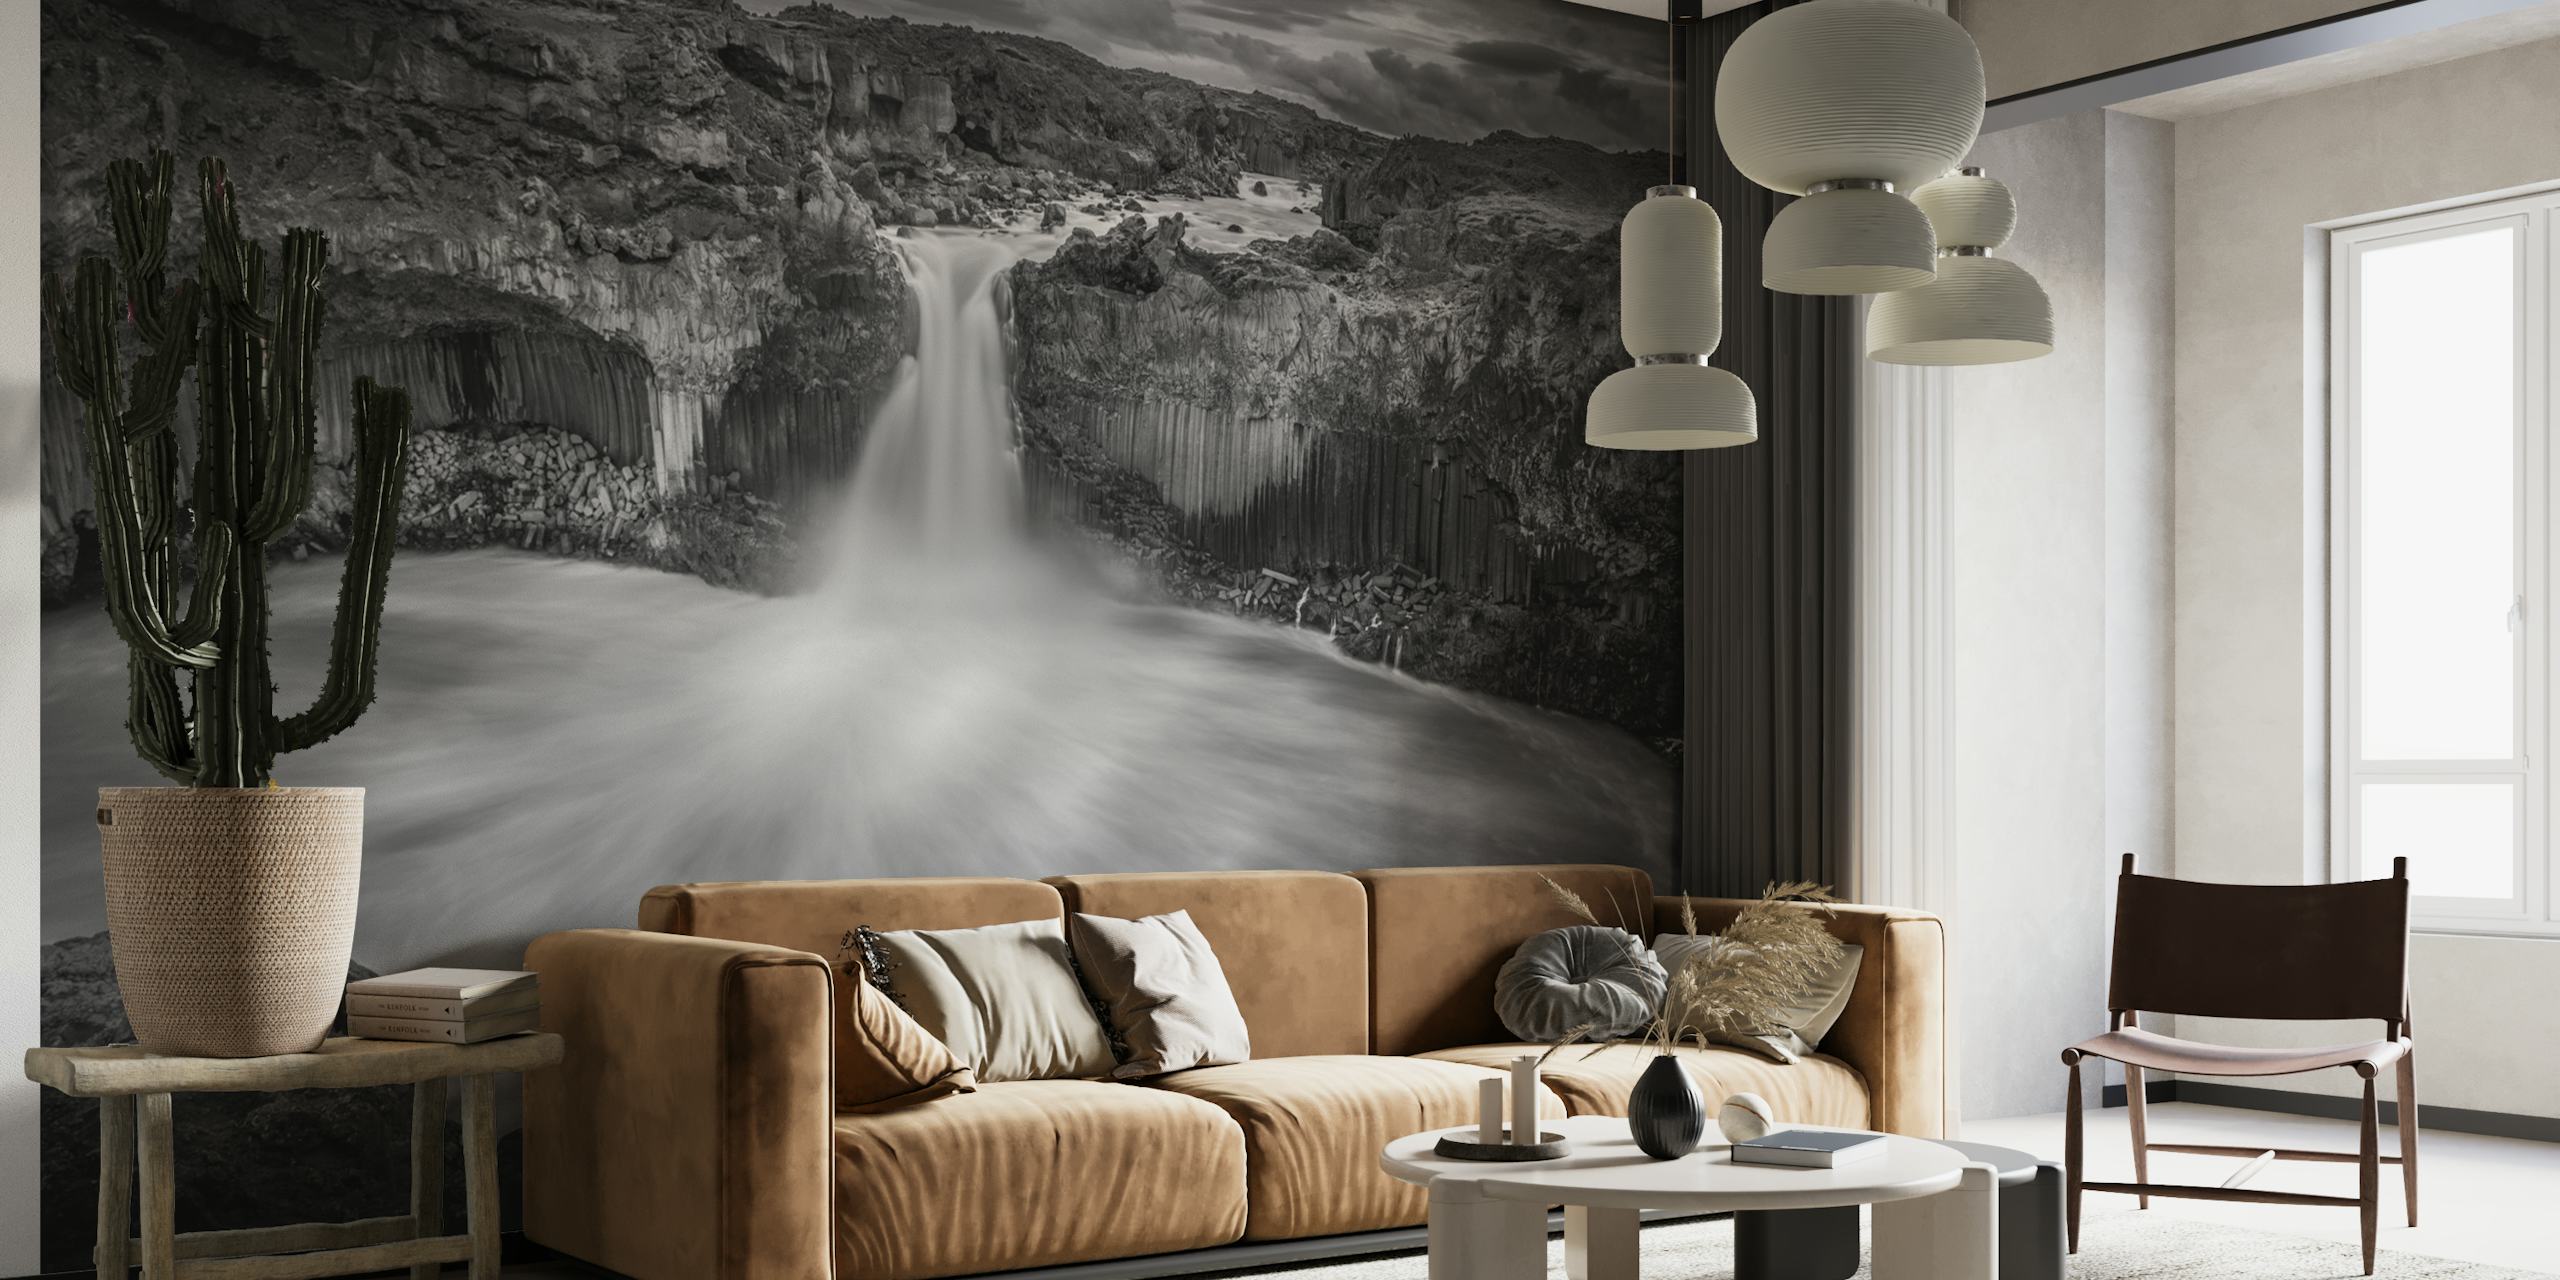 Peinture murale de cascade islandaise en noir et blanc affichant des contrastes spectaculaires et la grandeur de la nature.